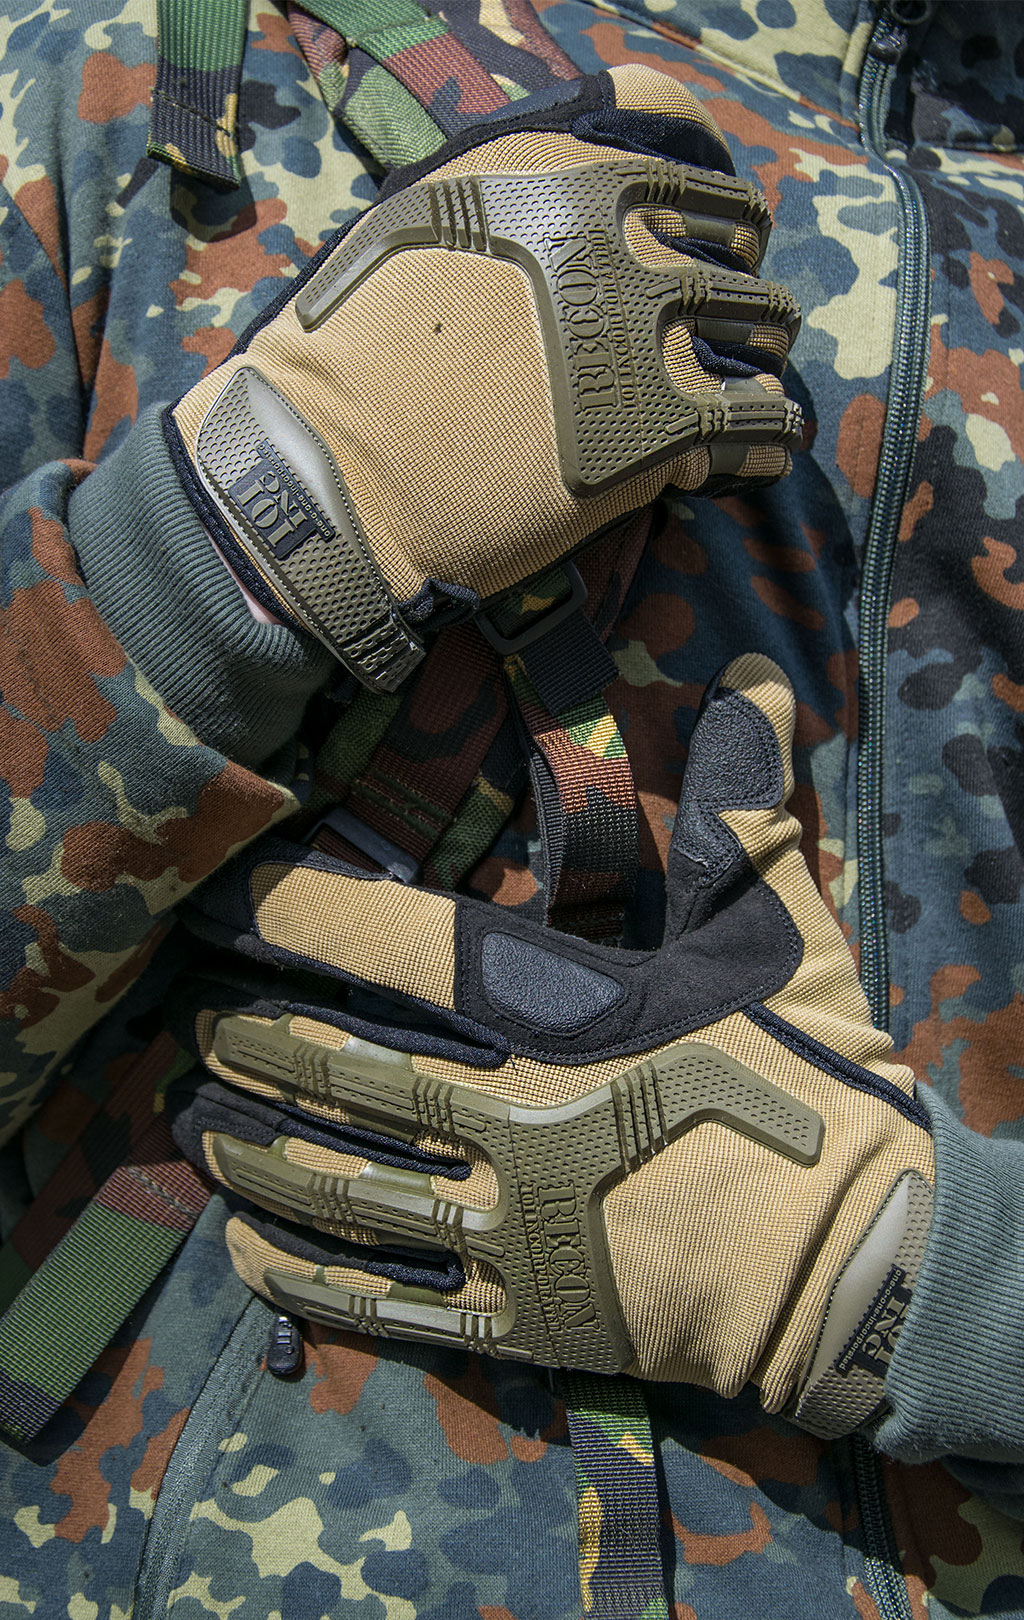 Перчатки тактические Fostex с резин. защитой 101 Inc. khaki 